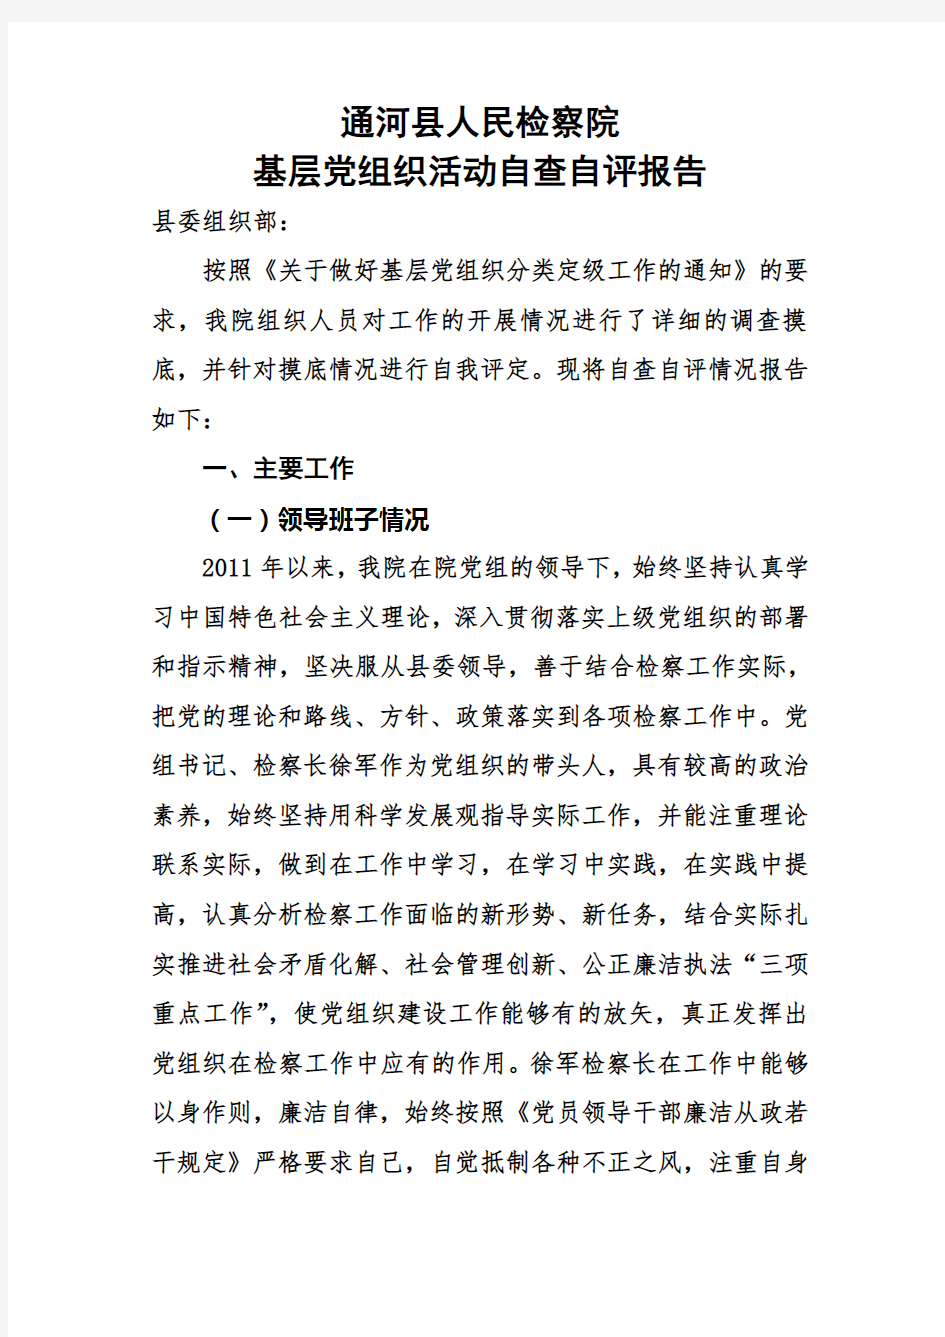 基层党组织建设工作自查自评报告(同名38831)